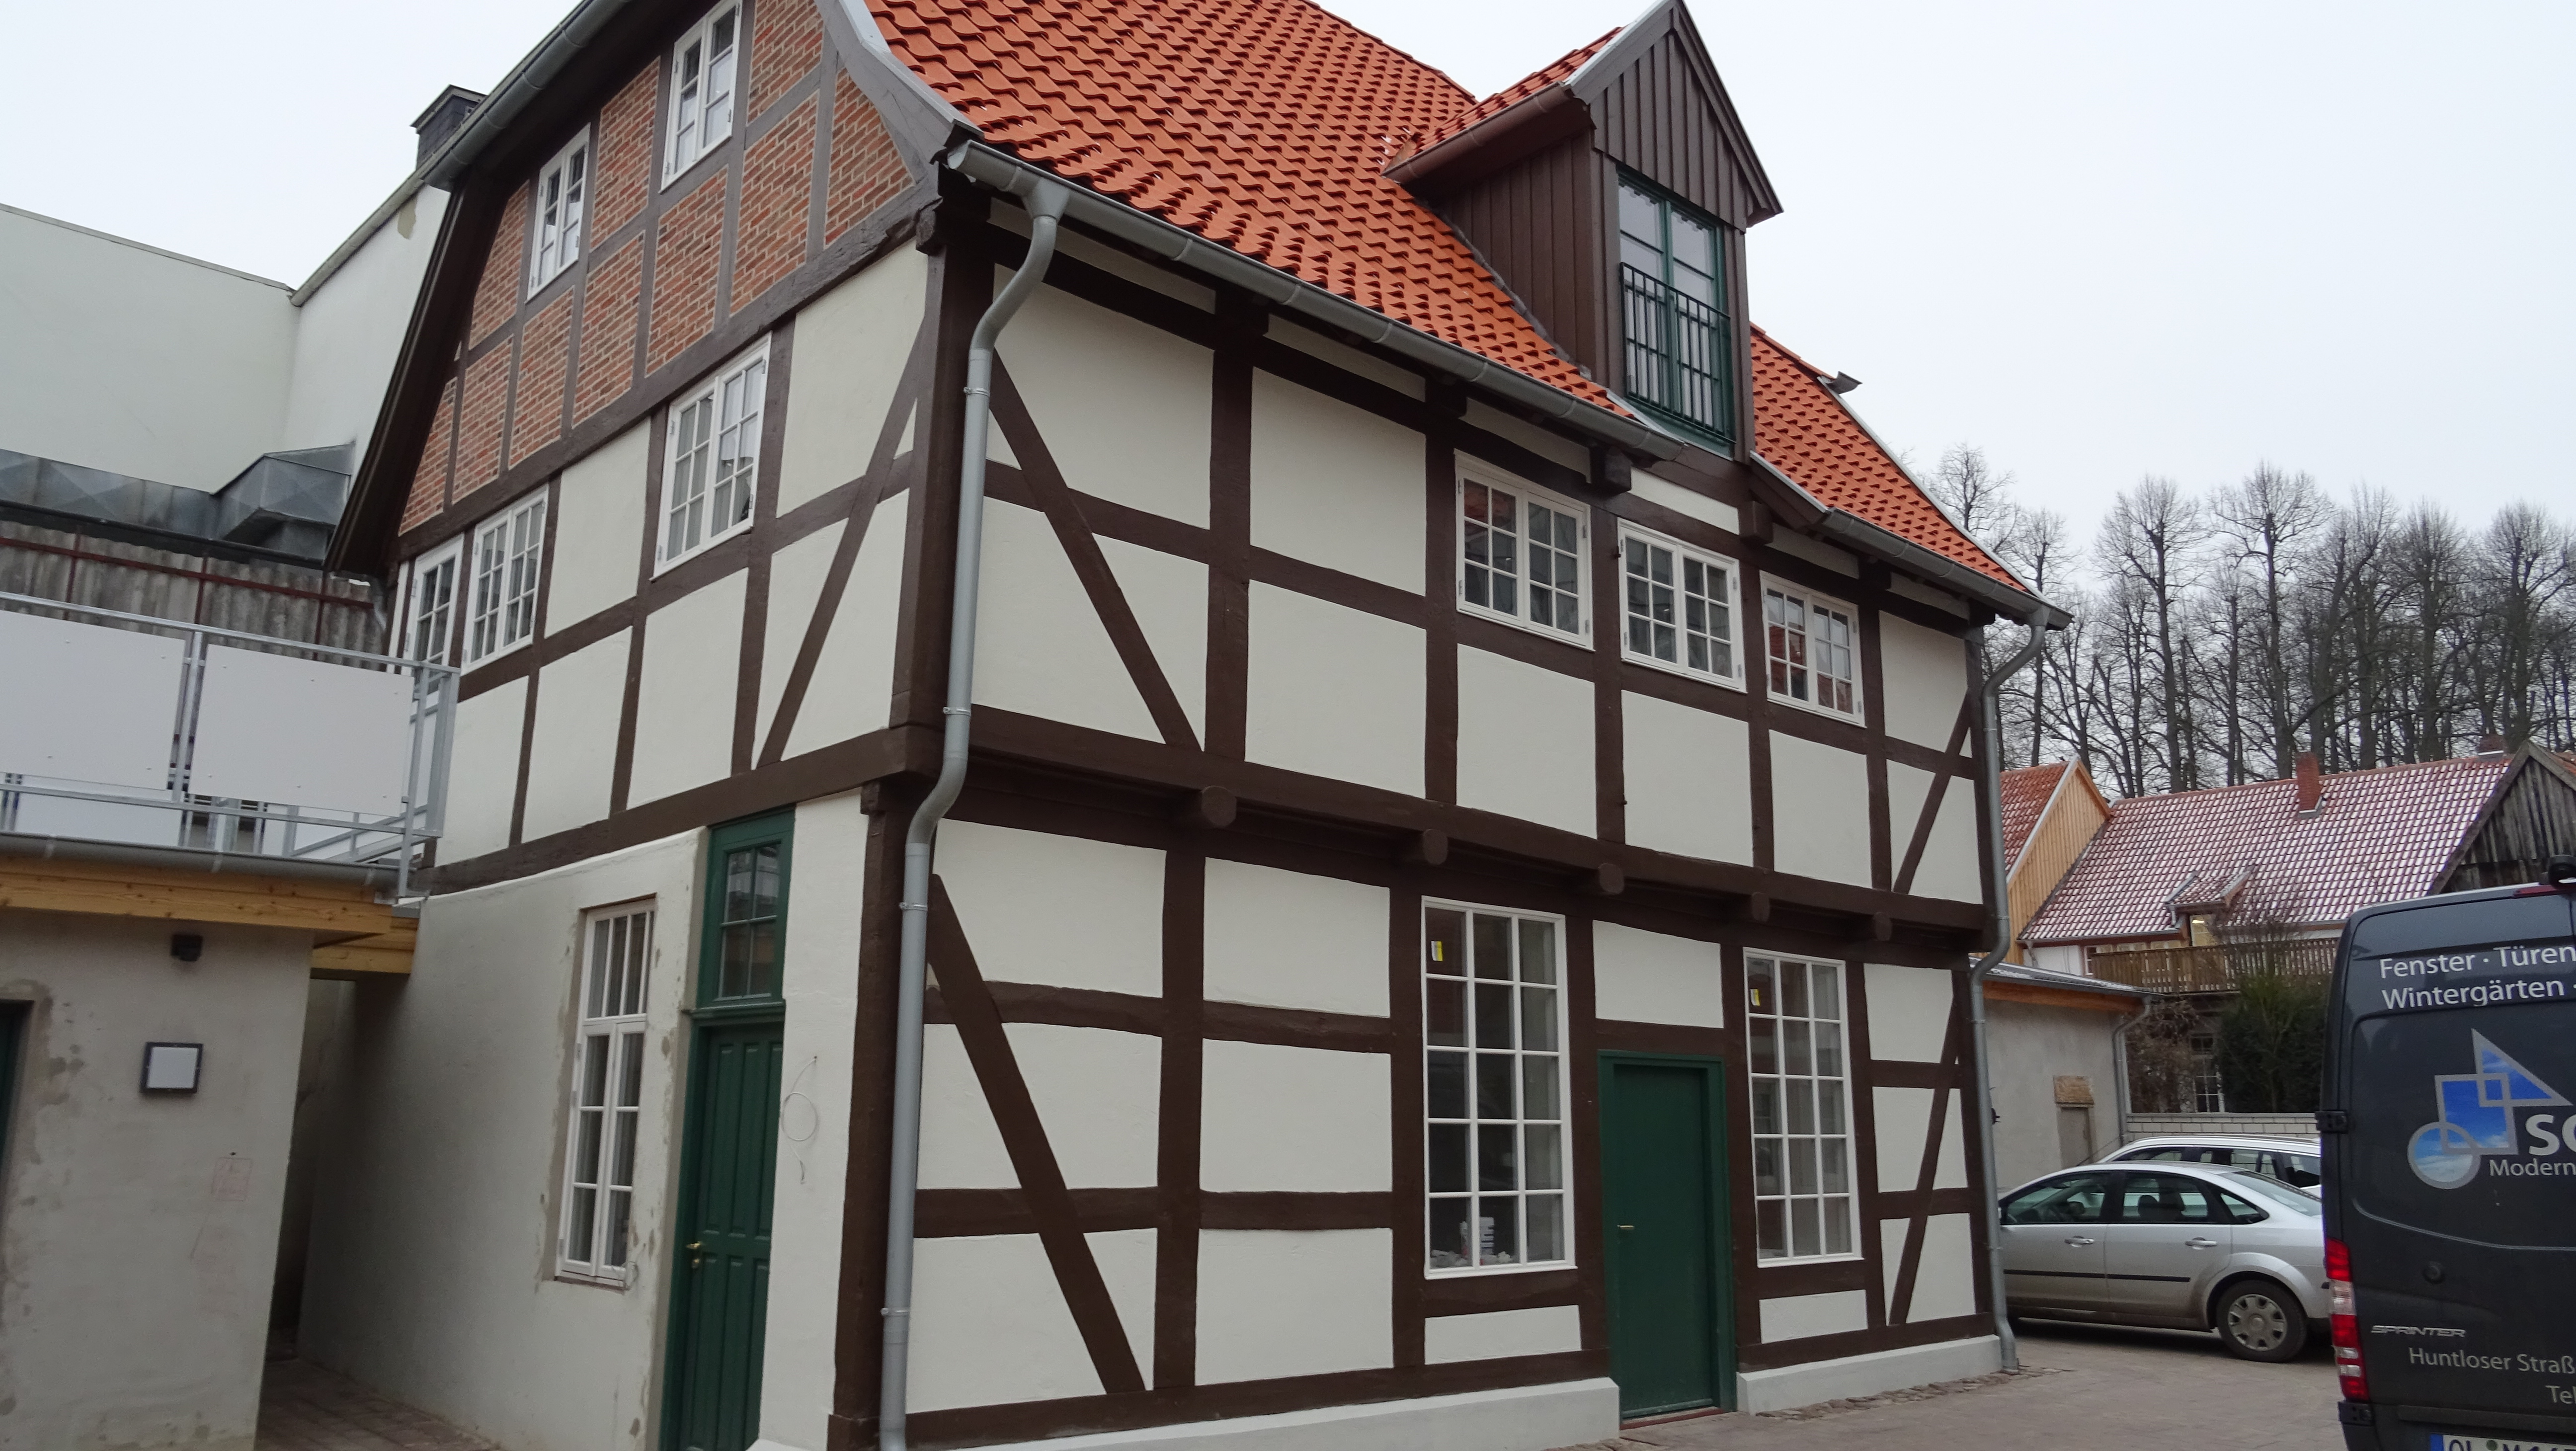 Denkmalgeschütztes Fachwerkhaus mit dänischen Holzfenstern von Fecon Nordwest.